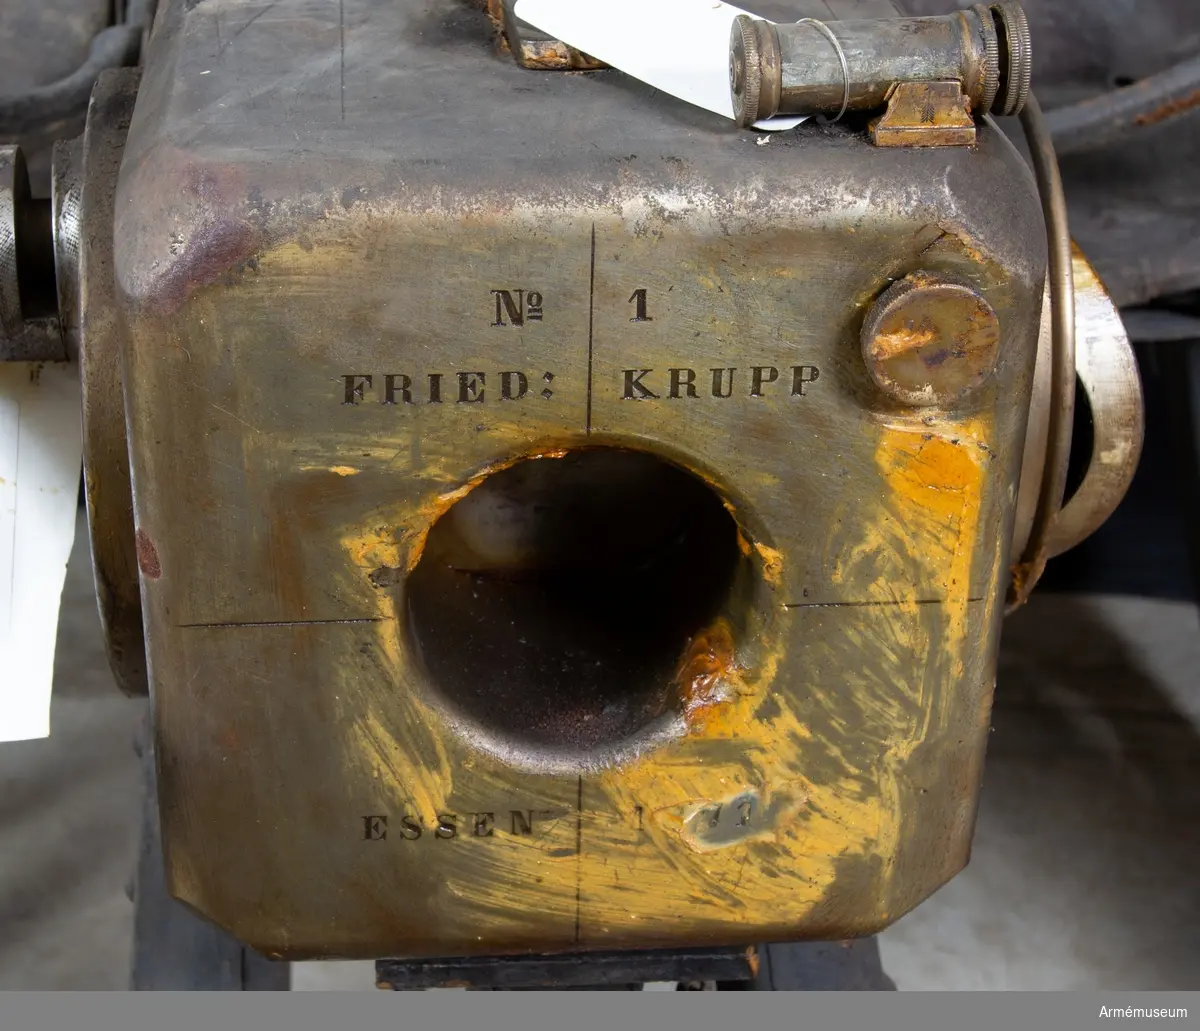 Grupp F I.
Eldrör till 4-pundig bakladdningskanon av Krupps system med rundkil.
Räfflat eldrör, Nr 1.